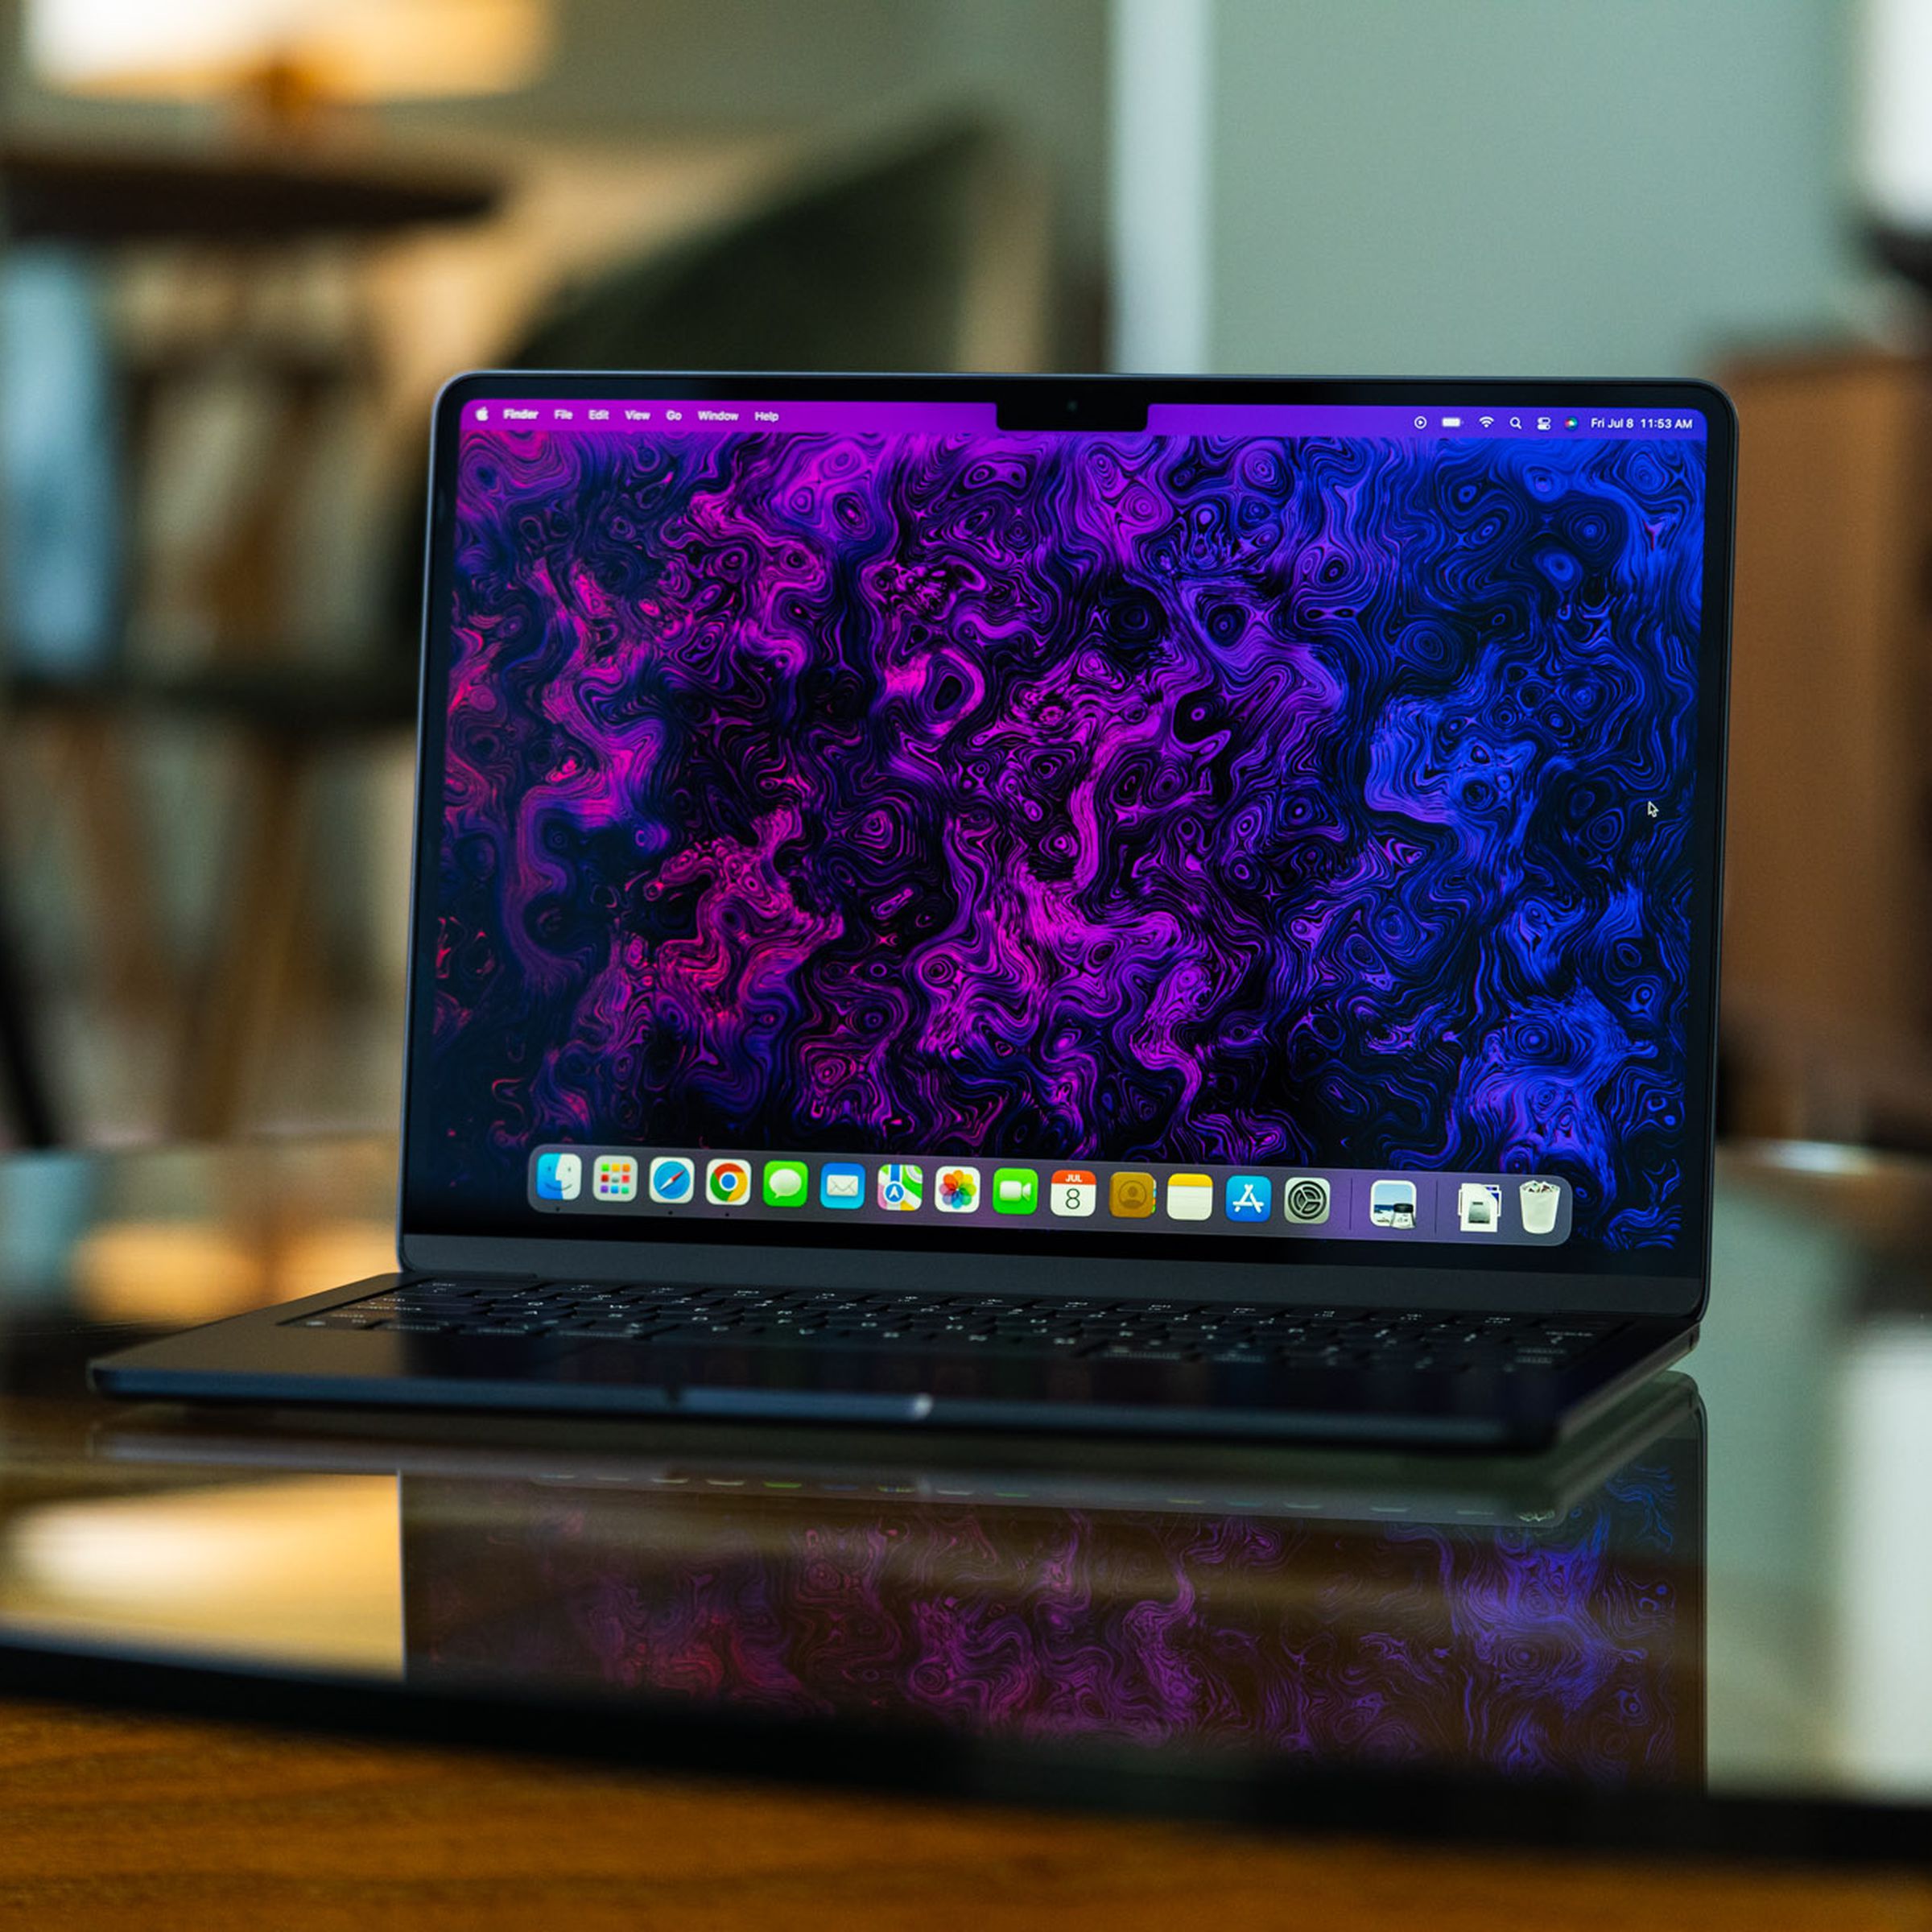 El MacBook Air M2 está abierto, frente a la cámara.  Su pantalla está iluminada y muestra un fondo psicodélico morado y negro creado por el equipo de arte e ilustración de The Verge.